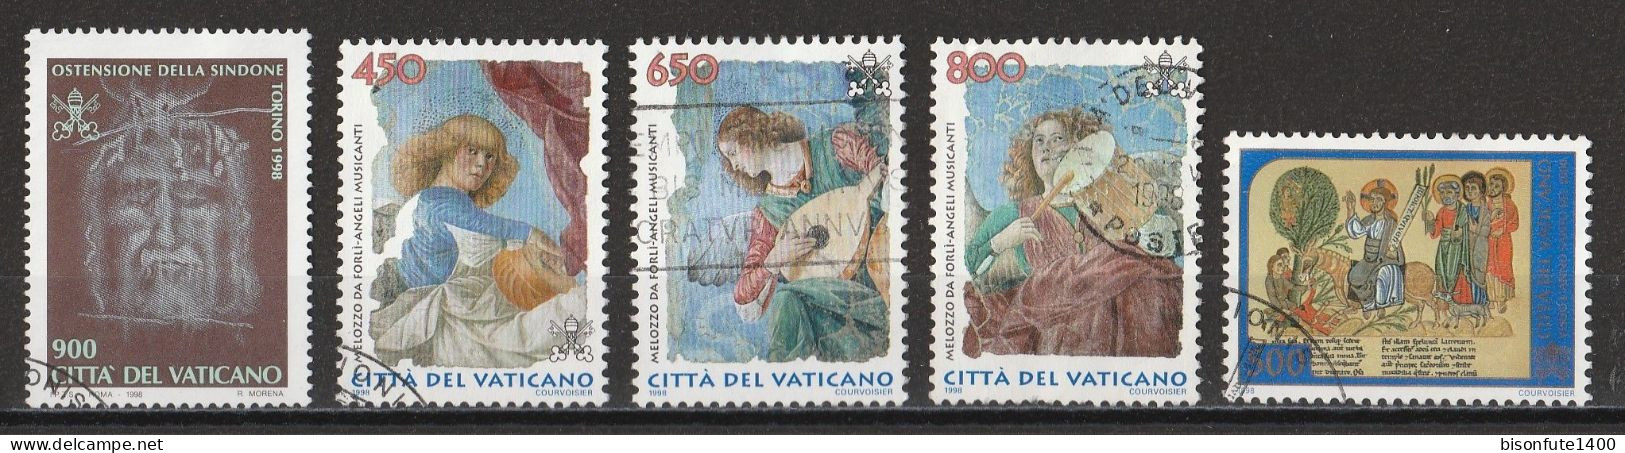 Vatican 1998 : Timbres Yvert & Tellier N° 1106 - 1108 - 1109 - 1110 - 1114 - 1115 - 1121 Et 1123 Oblitérés - Gebruikt